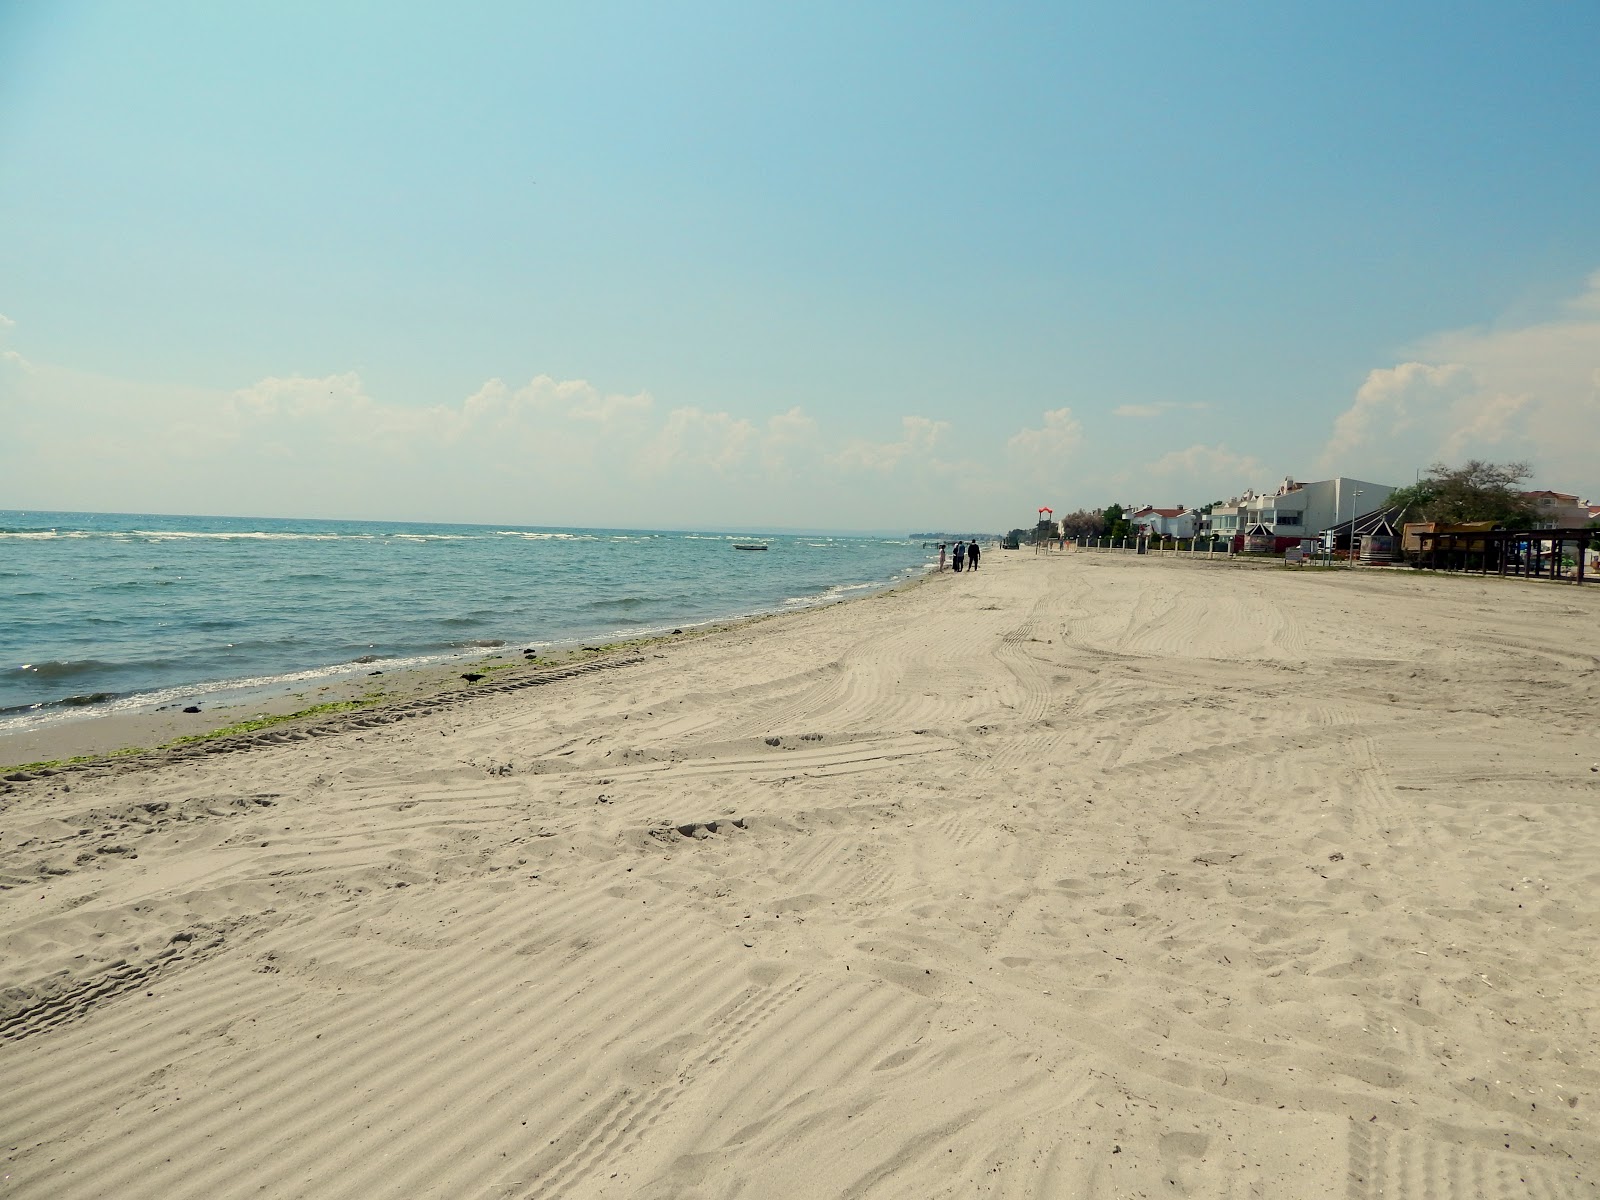 Ataturk Parkı Plajı'in fotoğrafı plaj tatil beldesi alanı